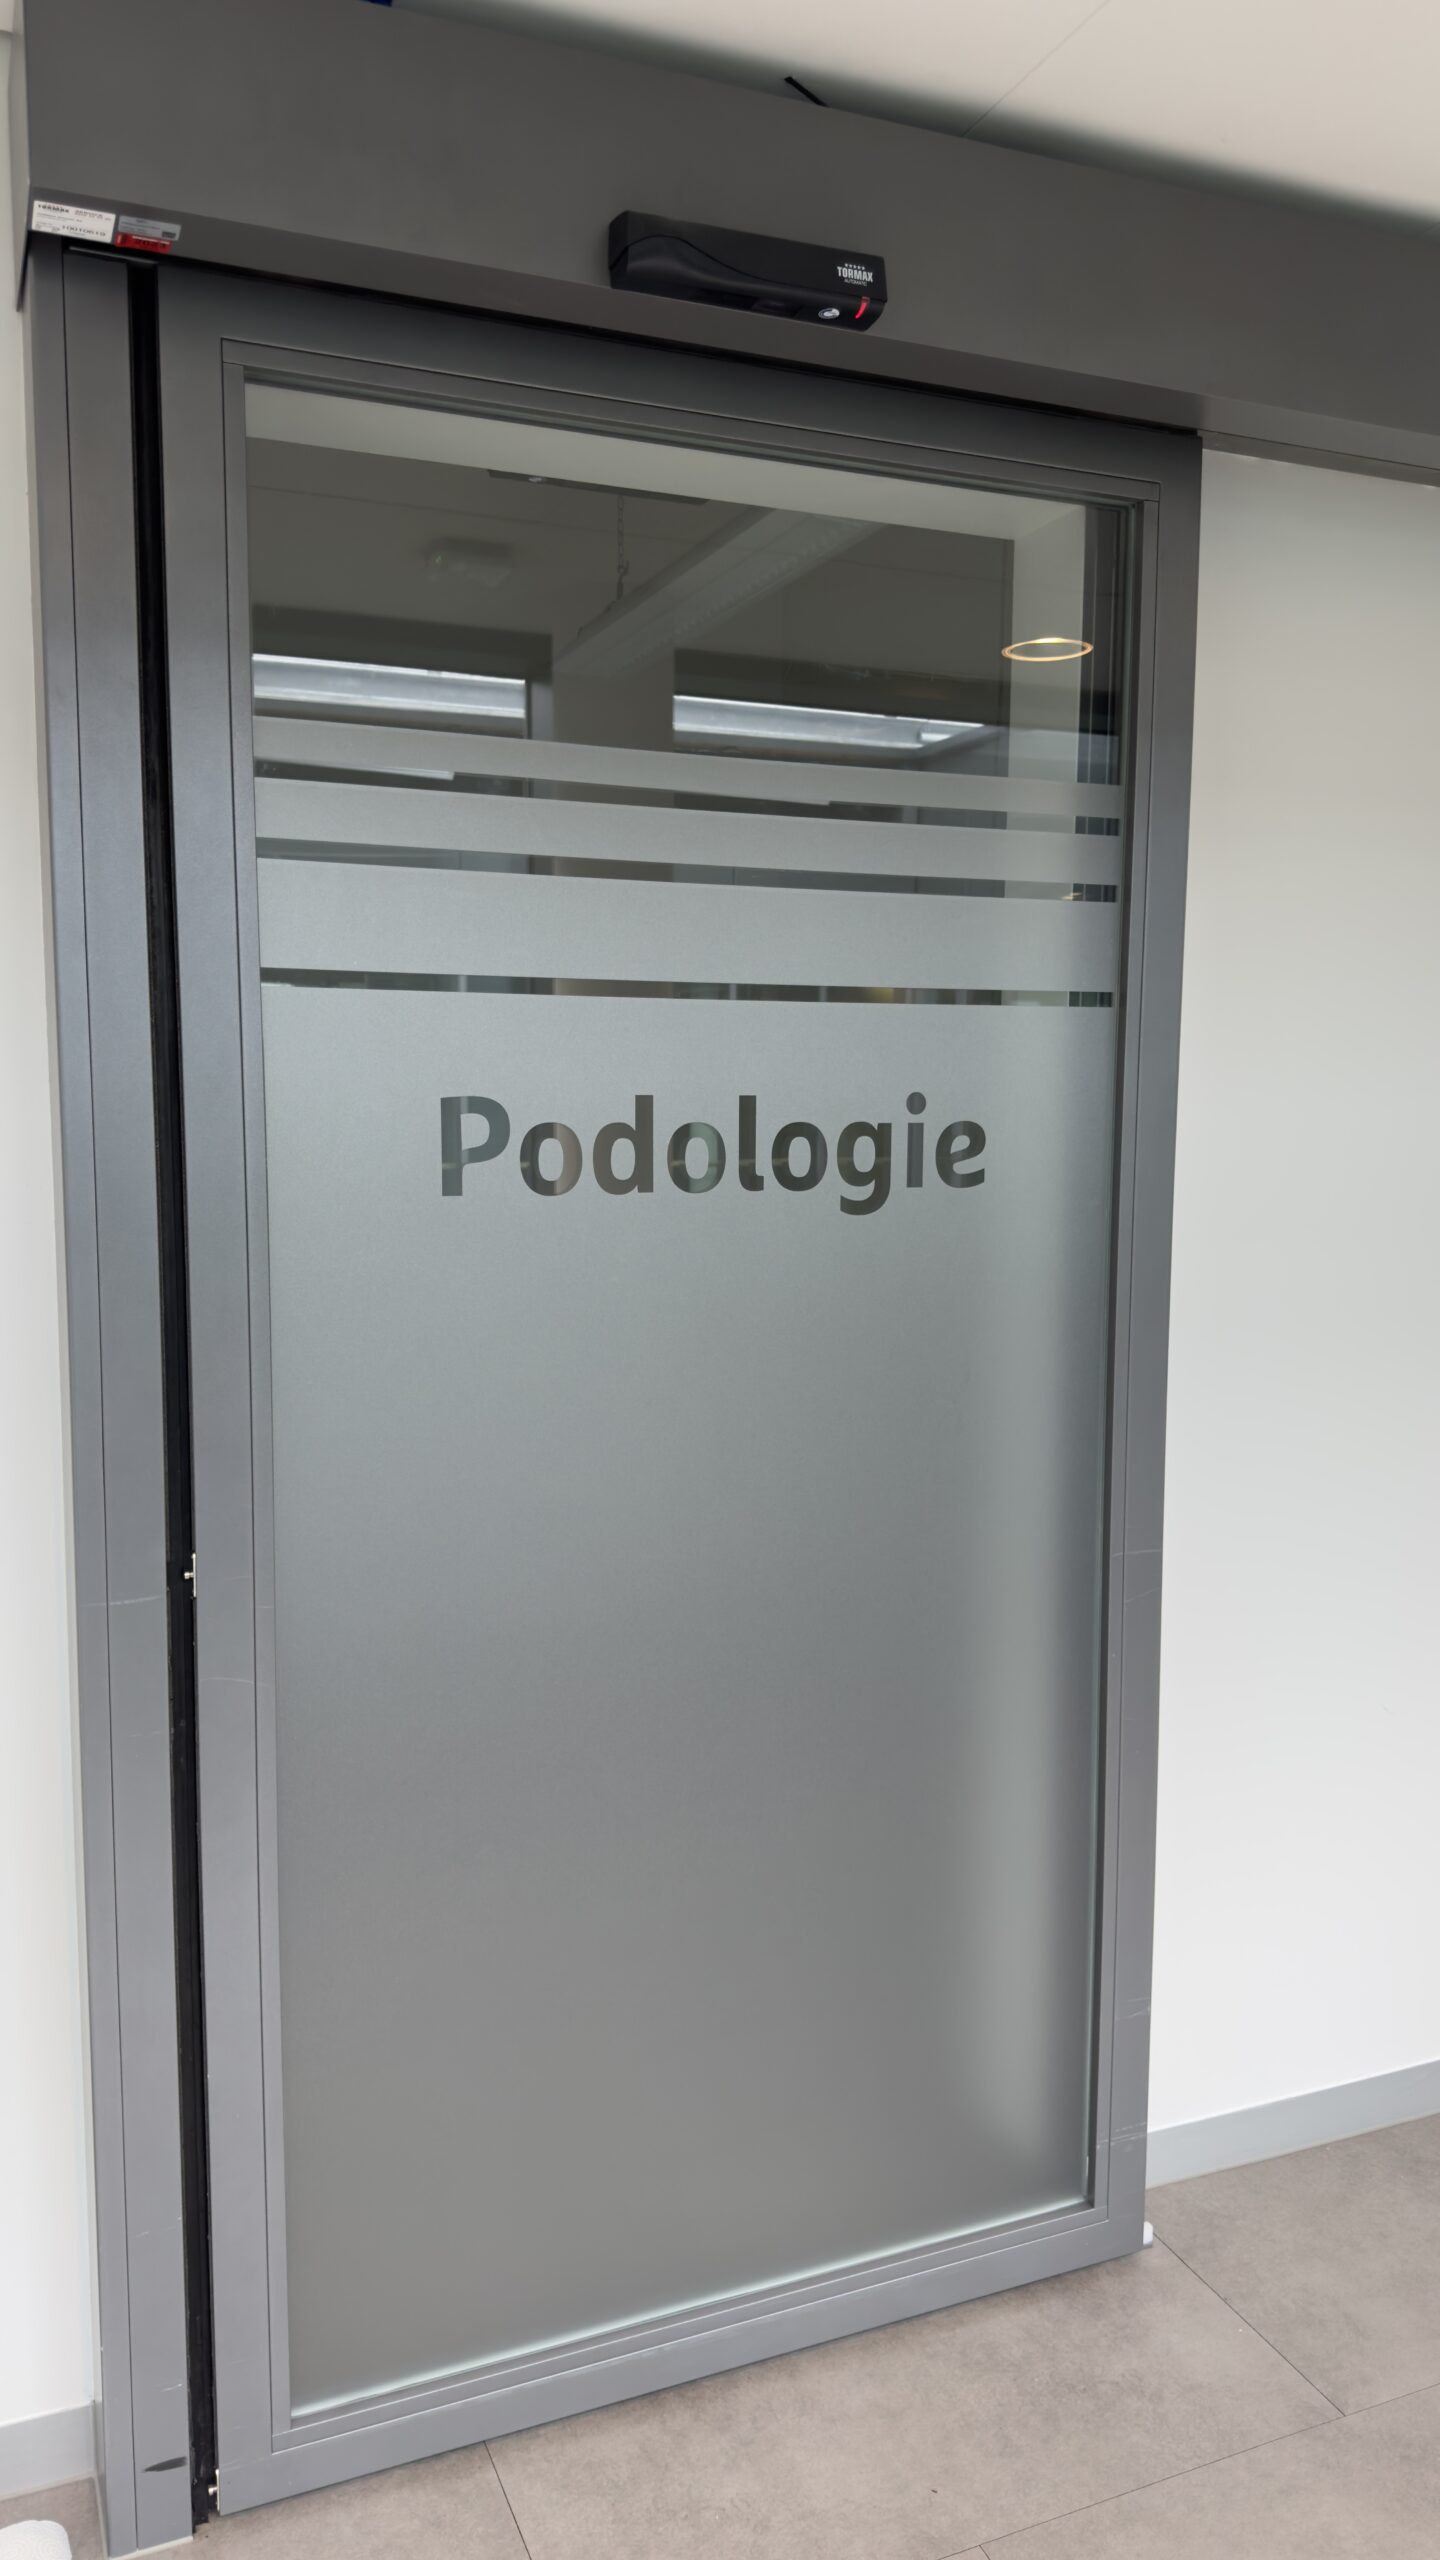 Featured image for “Podologie, ein Raum für Wohlbefinden und Gesundheit”